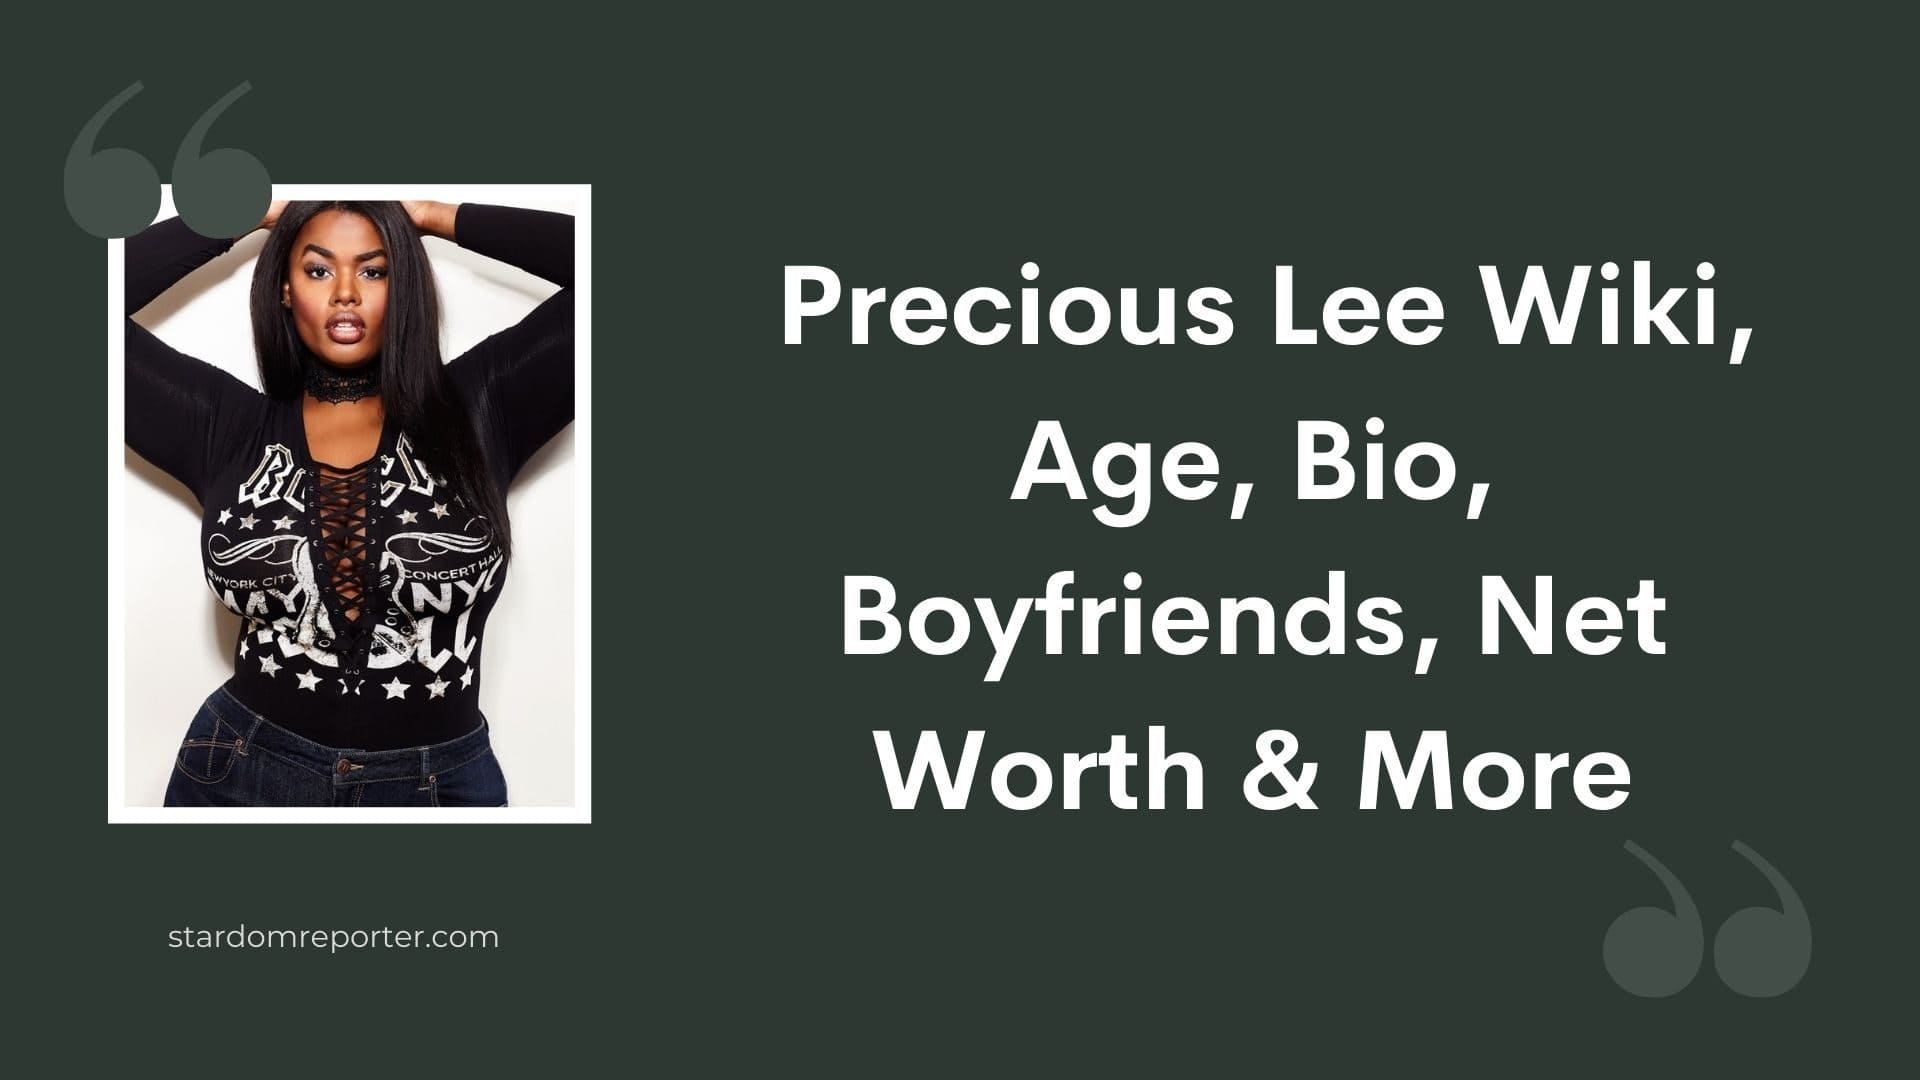 Precious Lee Wiki, Age, Bio, Boyfriends, Net Worth & More - 55